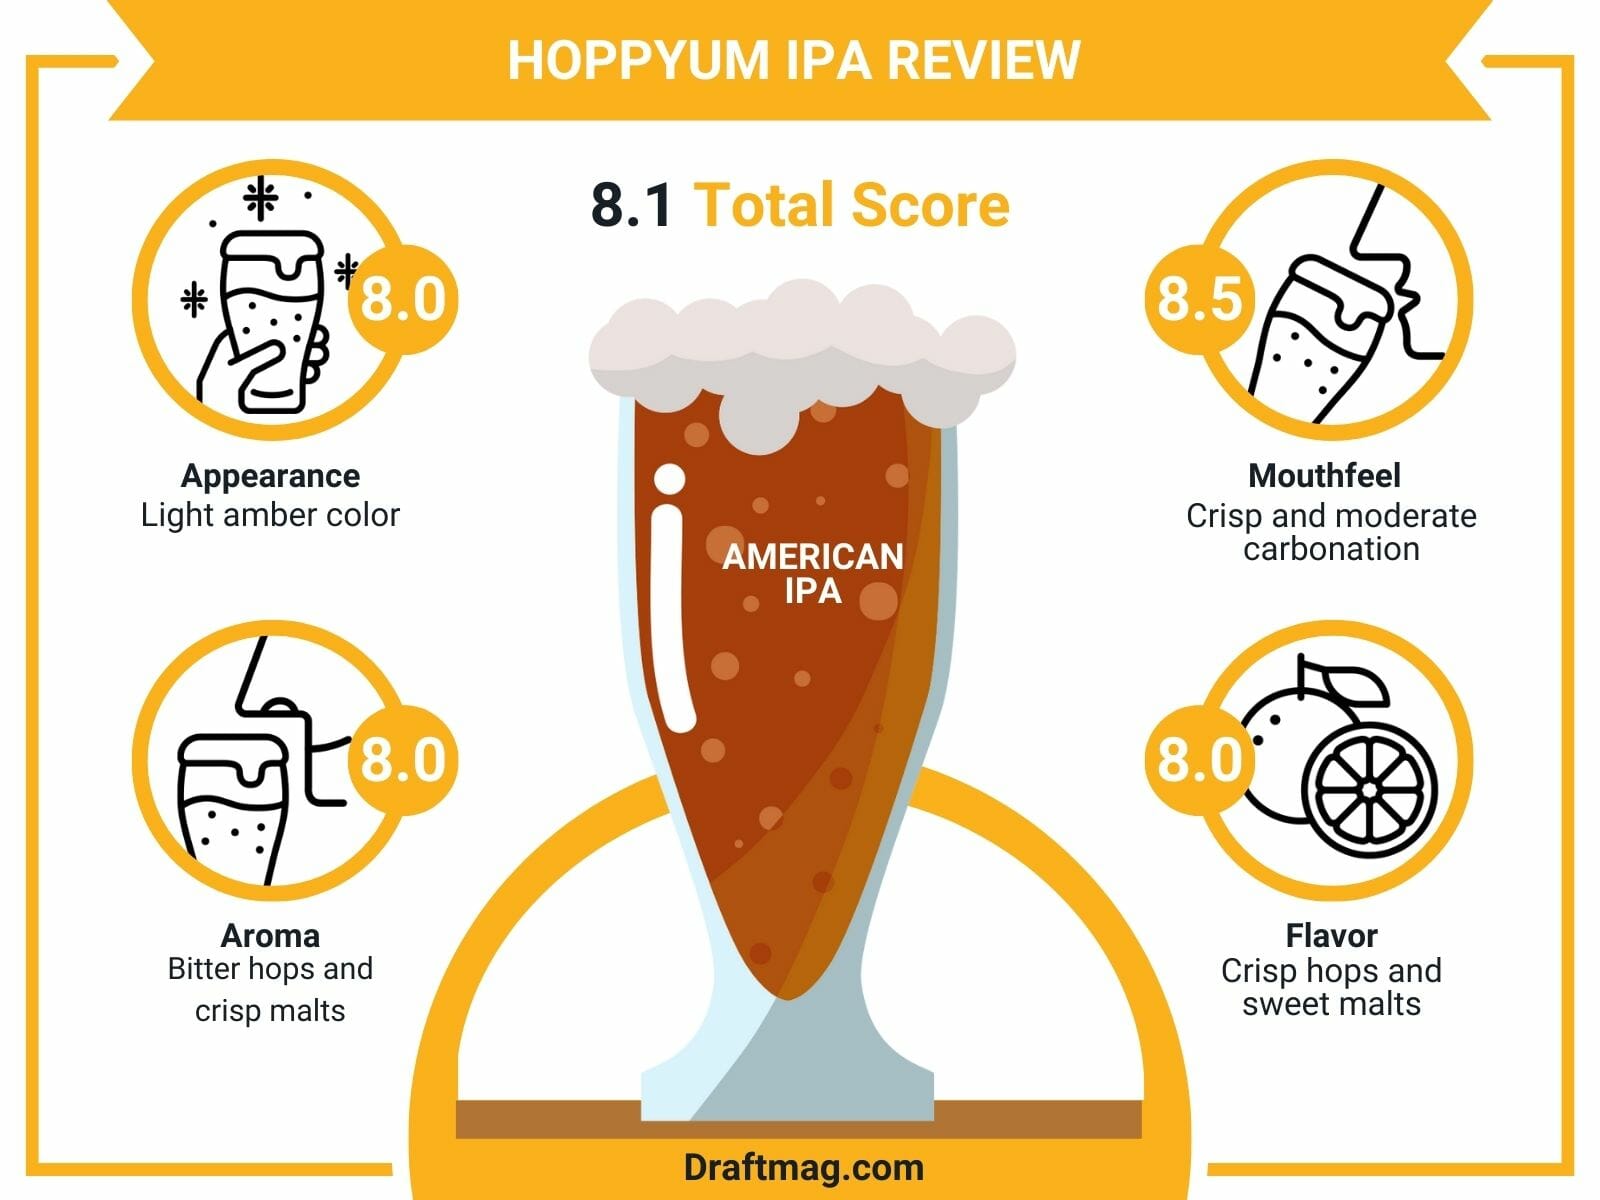 Hoppyum IPA Review Infographic